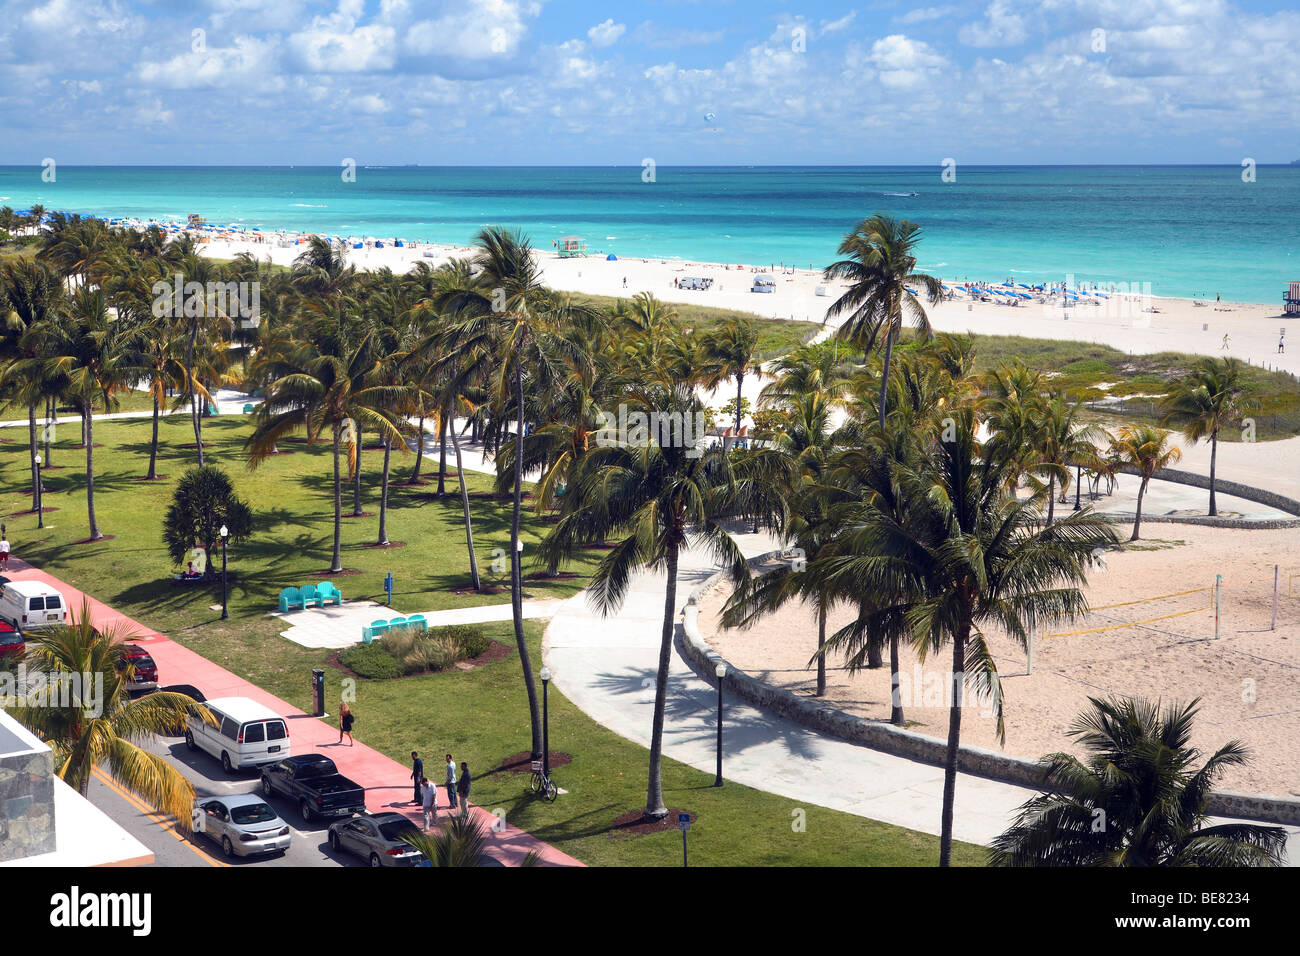 View at the Lummus Park and the beach, South Beach, Miami